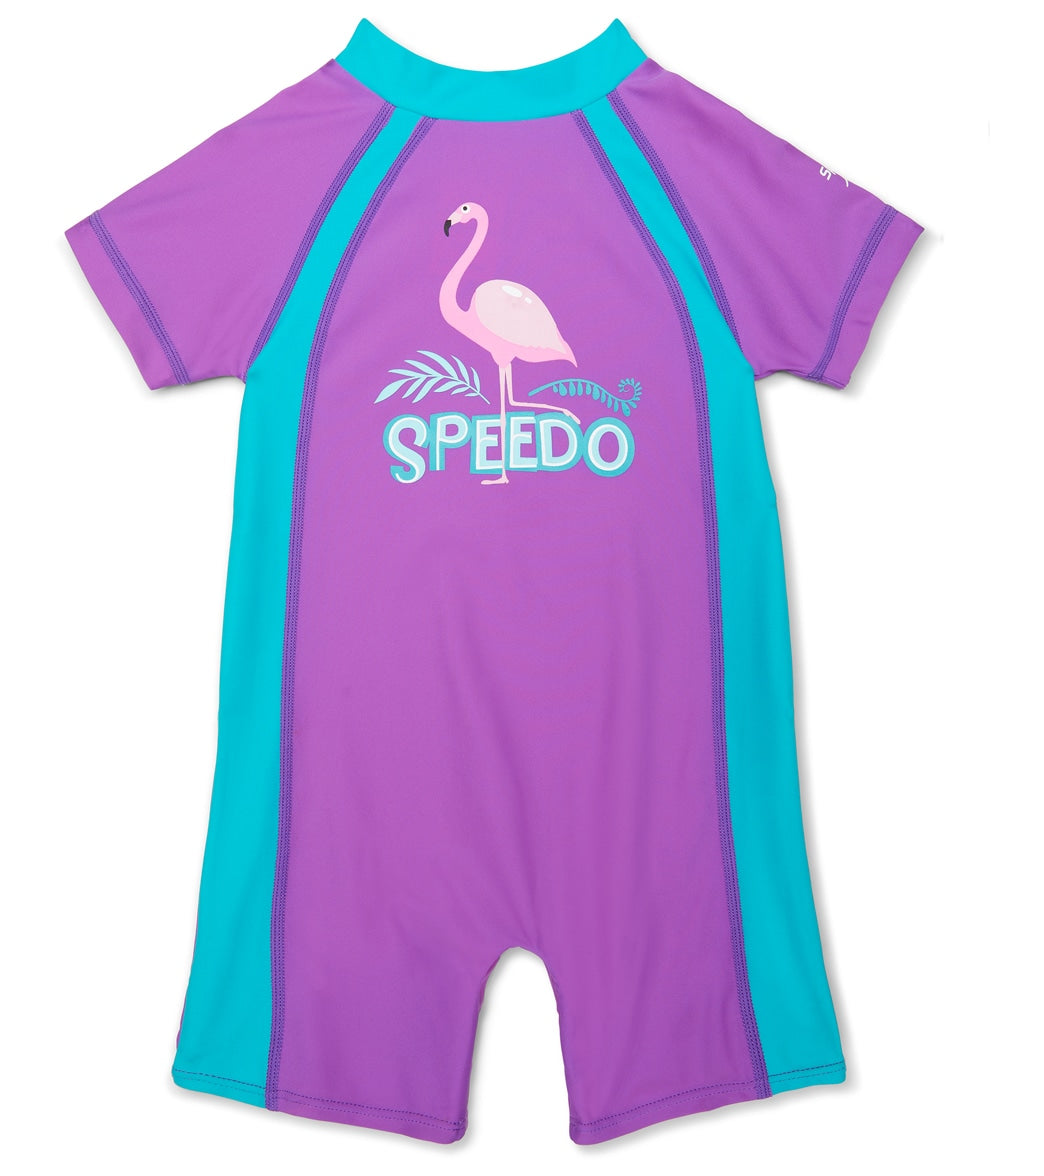 Speedo Begin to Swim Toddler Unisex Sun Suit